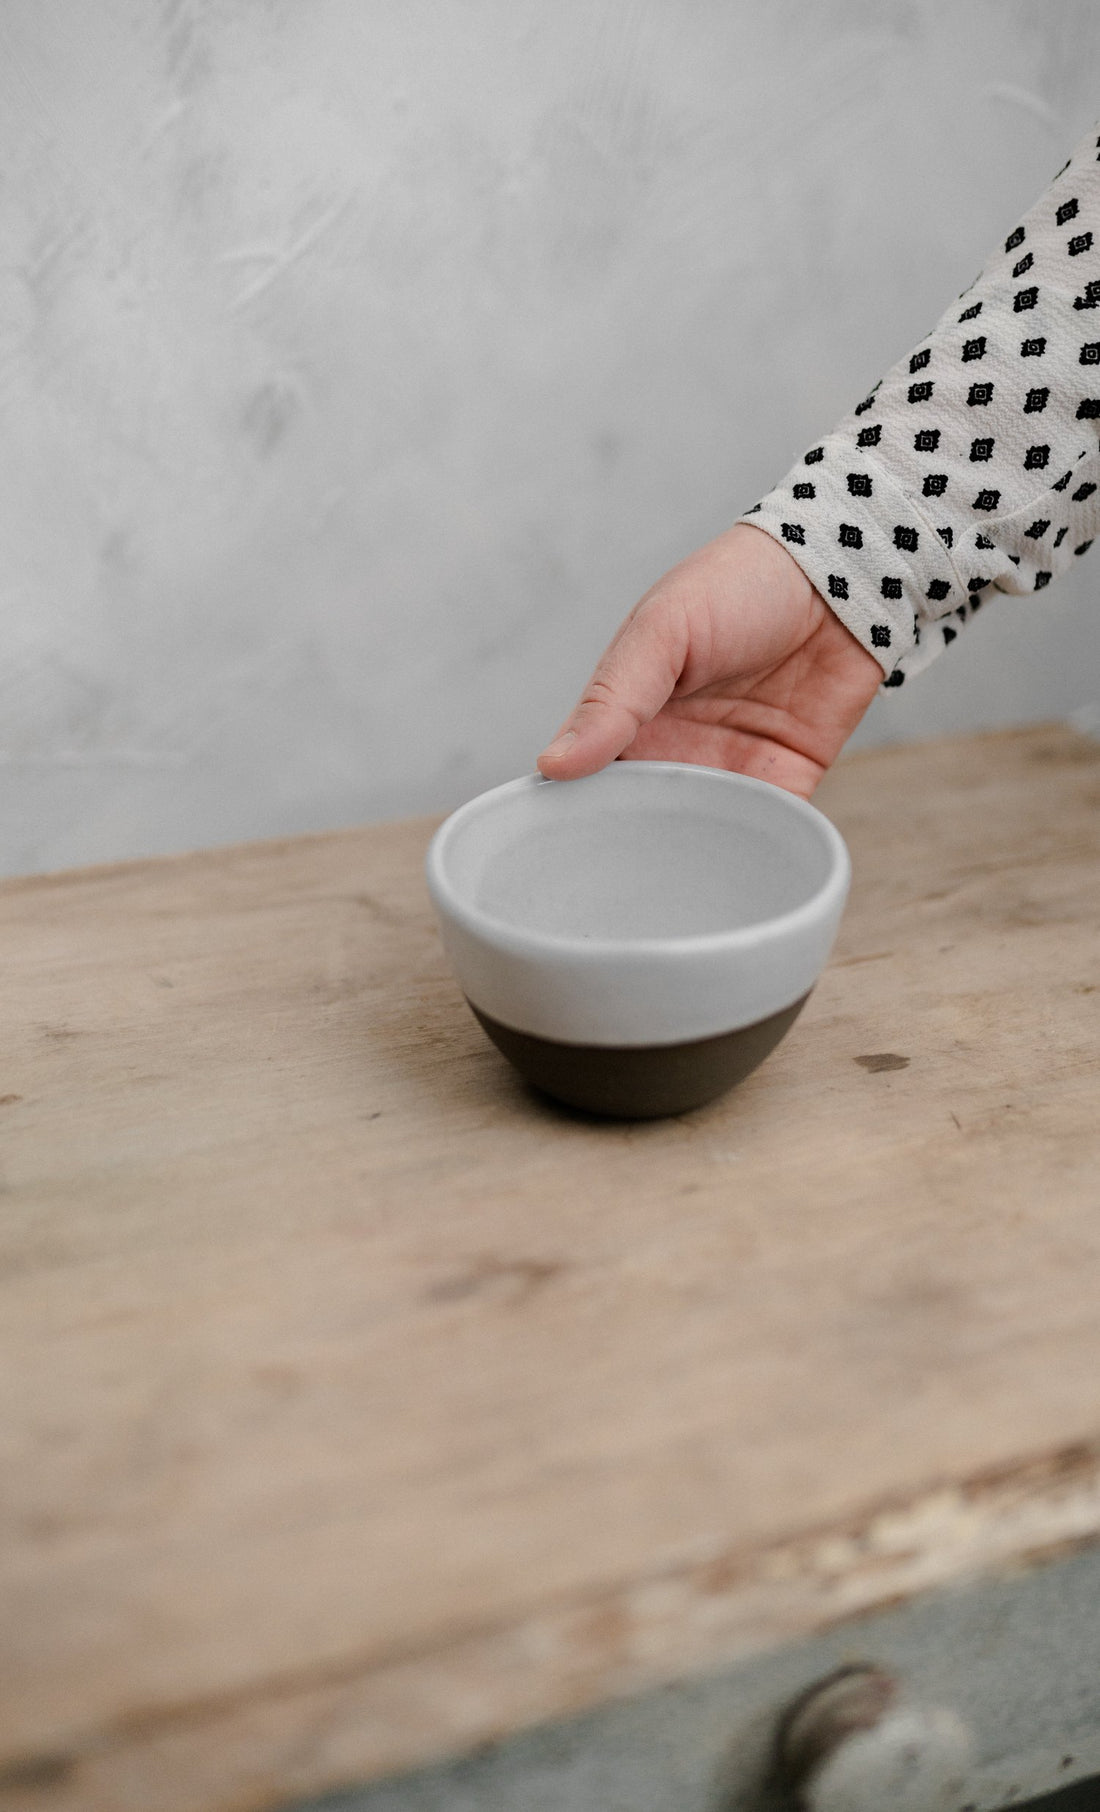 Latte bowl by Atelier Tréma